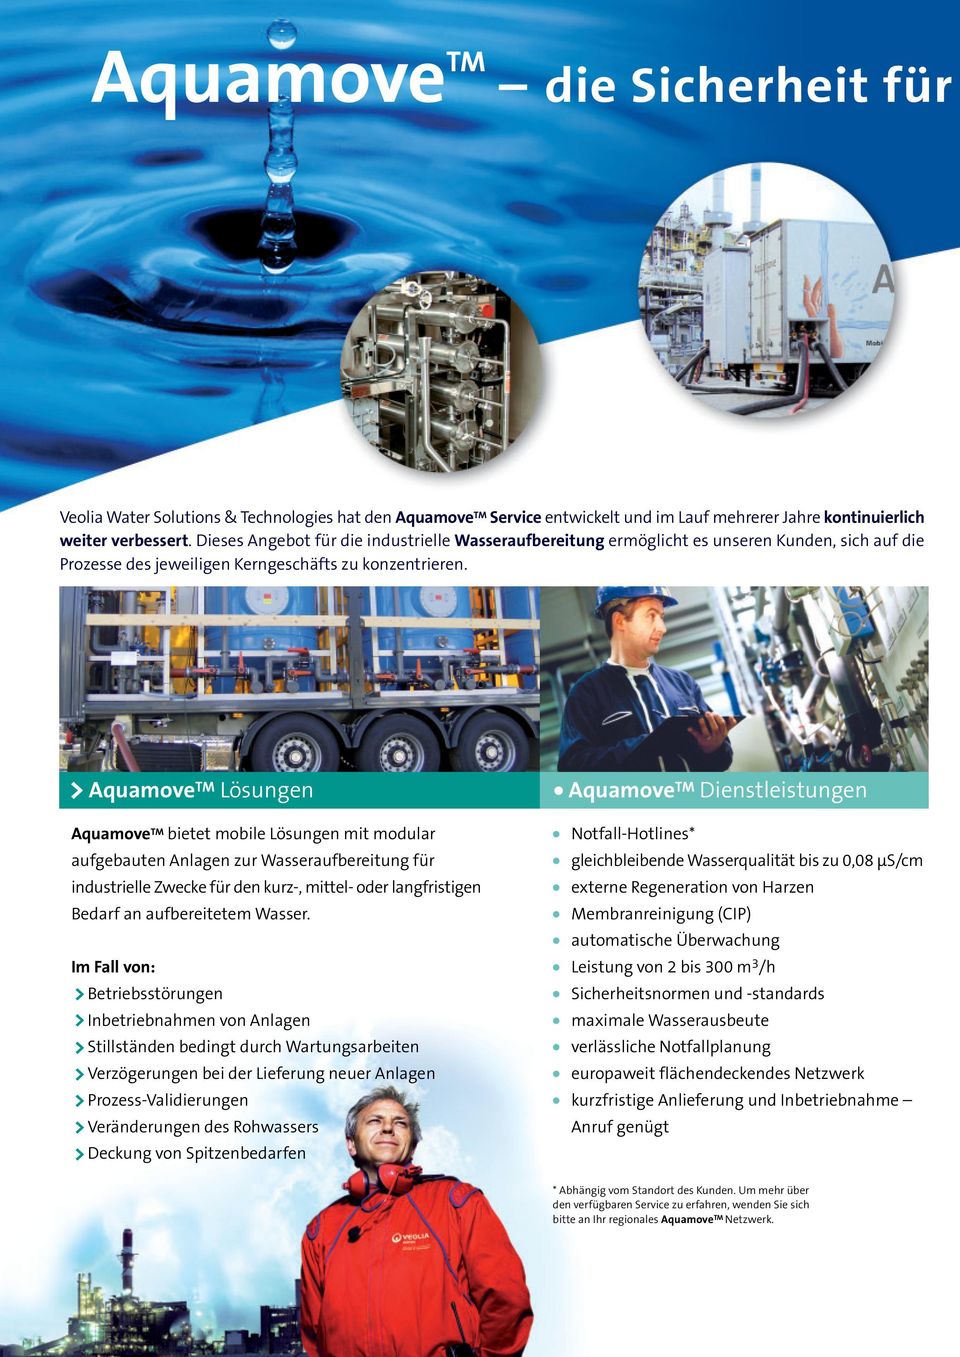 Aquamove TM Lösungen Aquamove TM bietet mobile Lösungen mit modular aufgebauten Anlagen zur Wasseraufbereitung für industrielle Zwecke für den kurz-, mittel- oder langfristigen Bedarf an